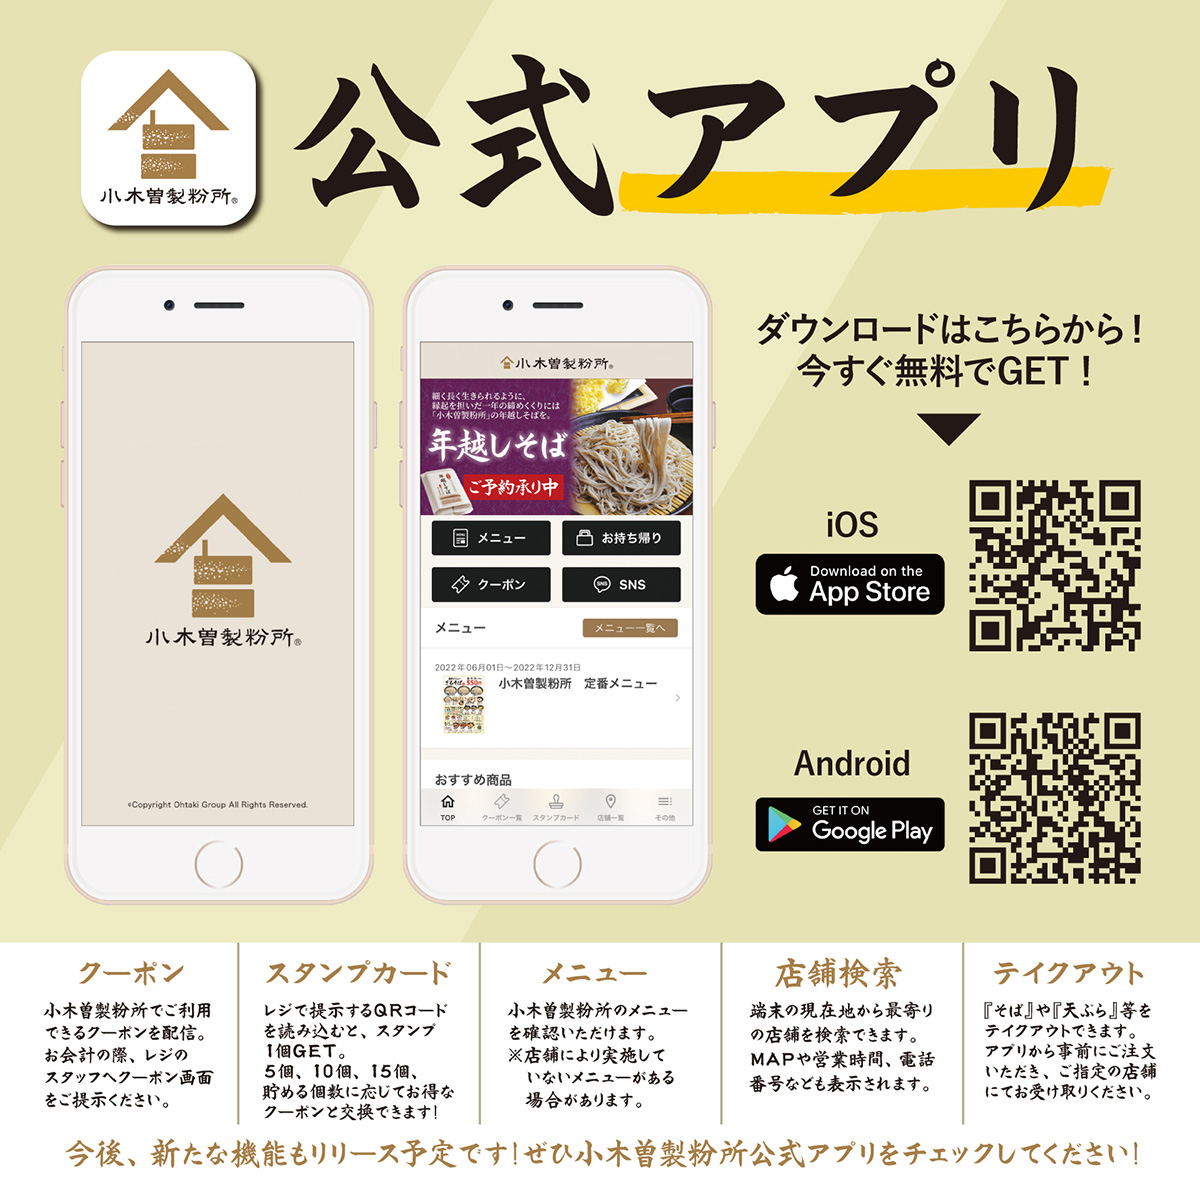 小木曽製粉所公式アプリ